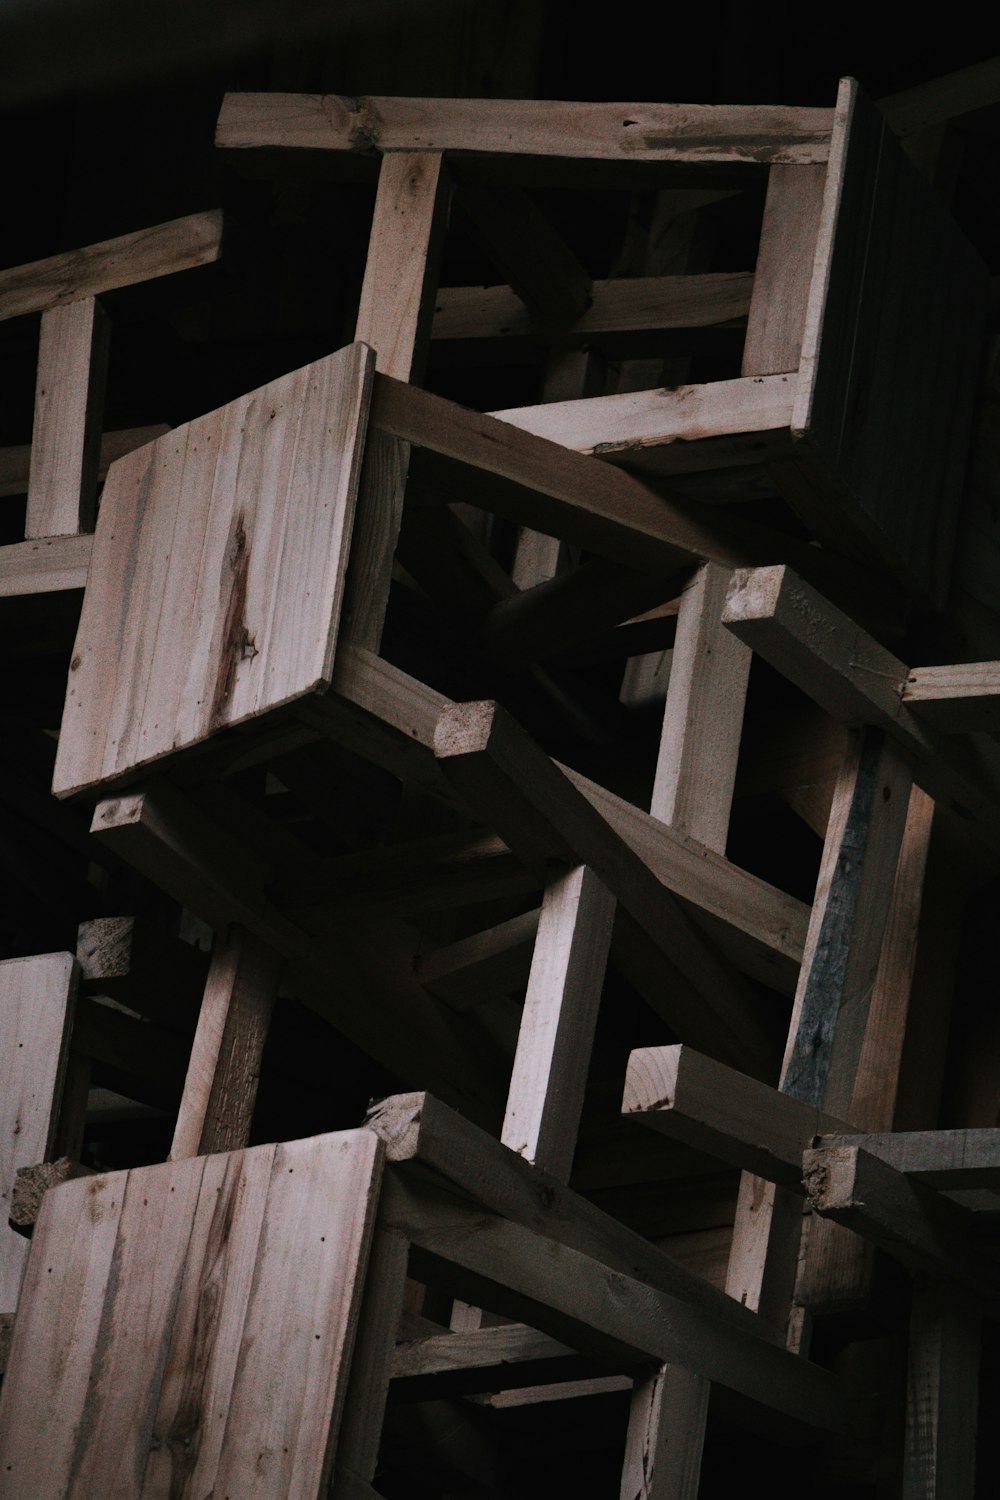 Una pila de cajas de madera apiladas una encima de la otra